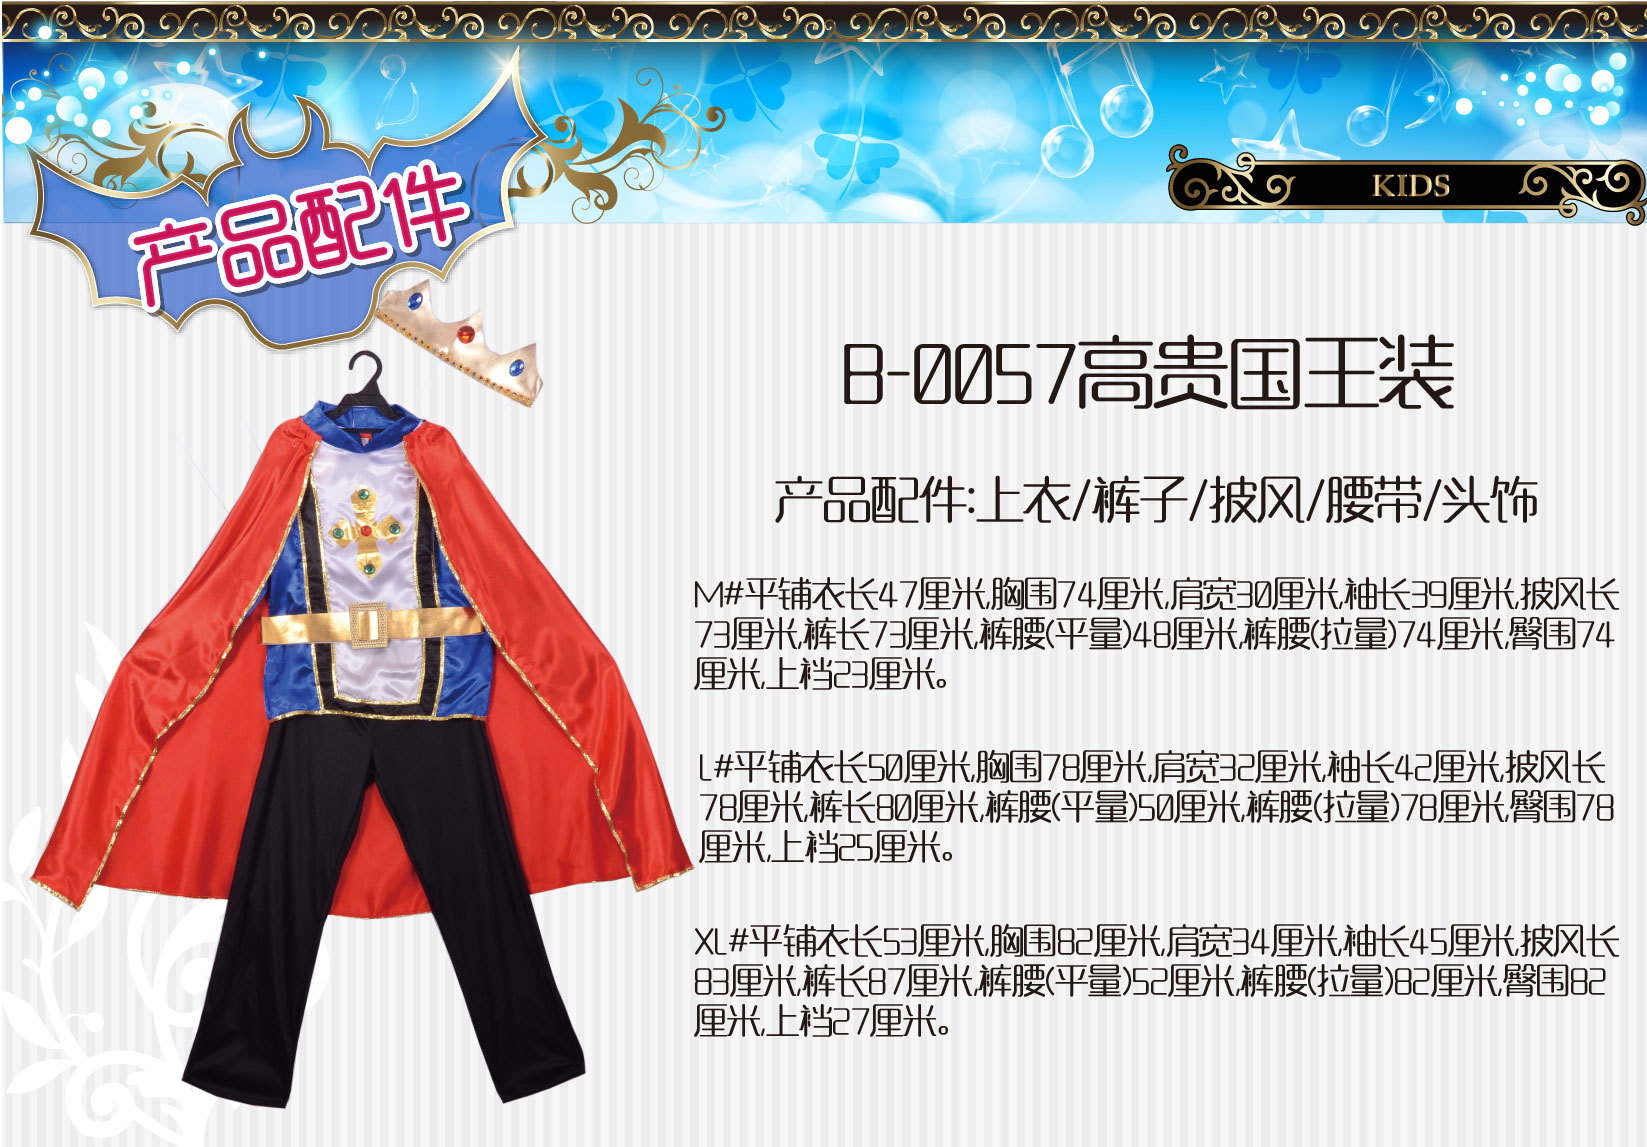 焕佑舞会万圣狂欢派对舞台游戏表演服装,B-0057高贵国王裝详情4